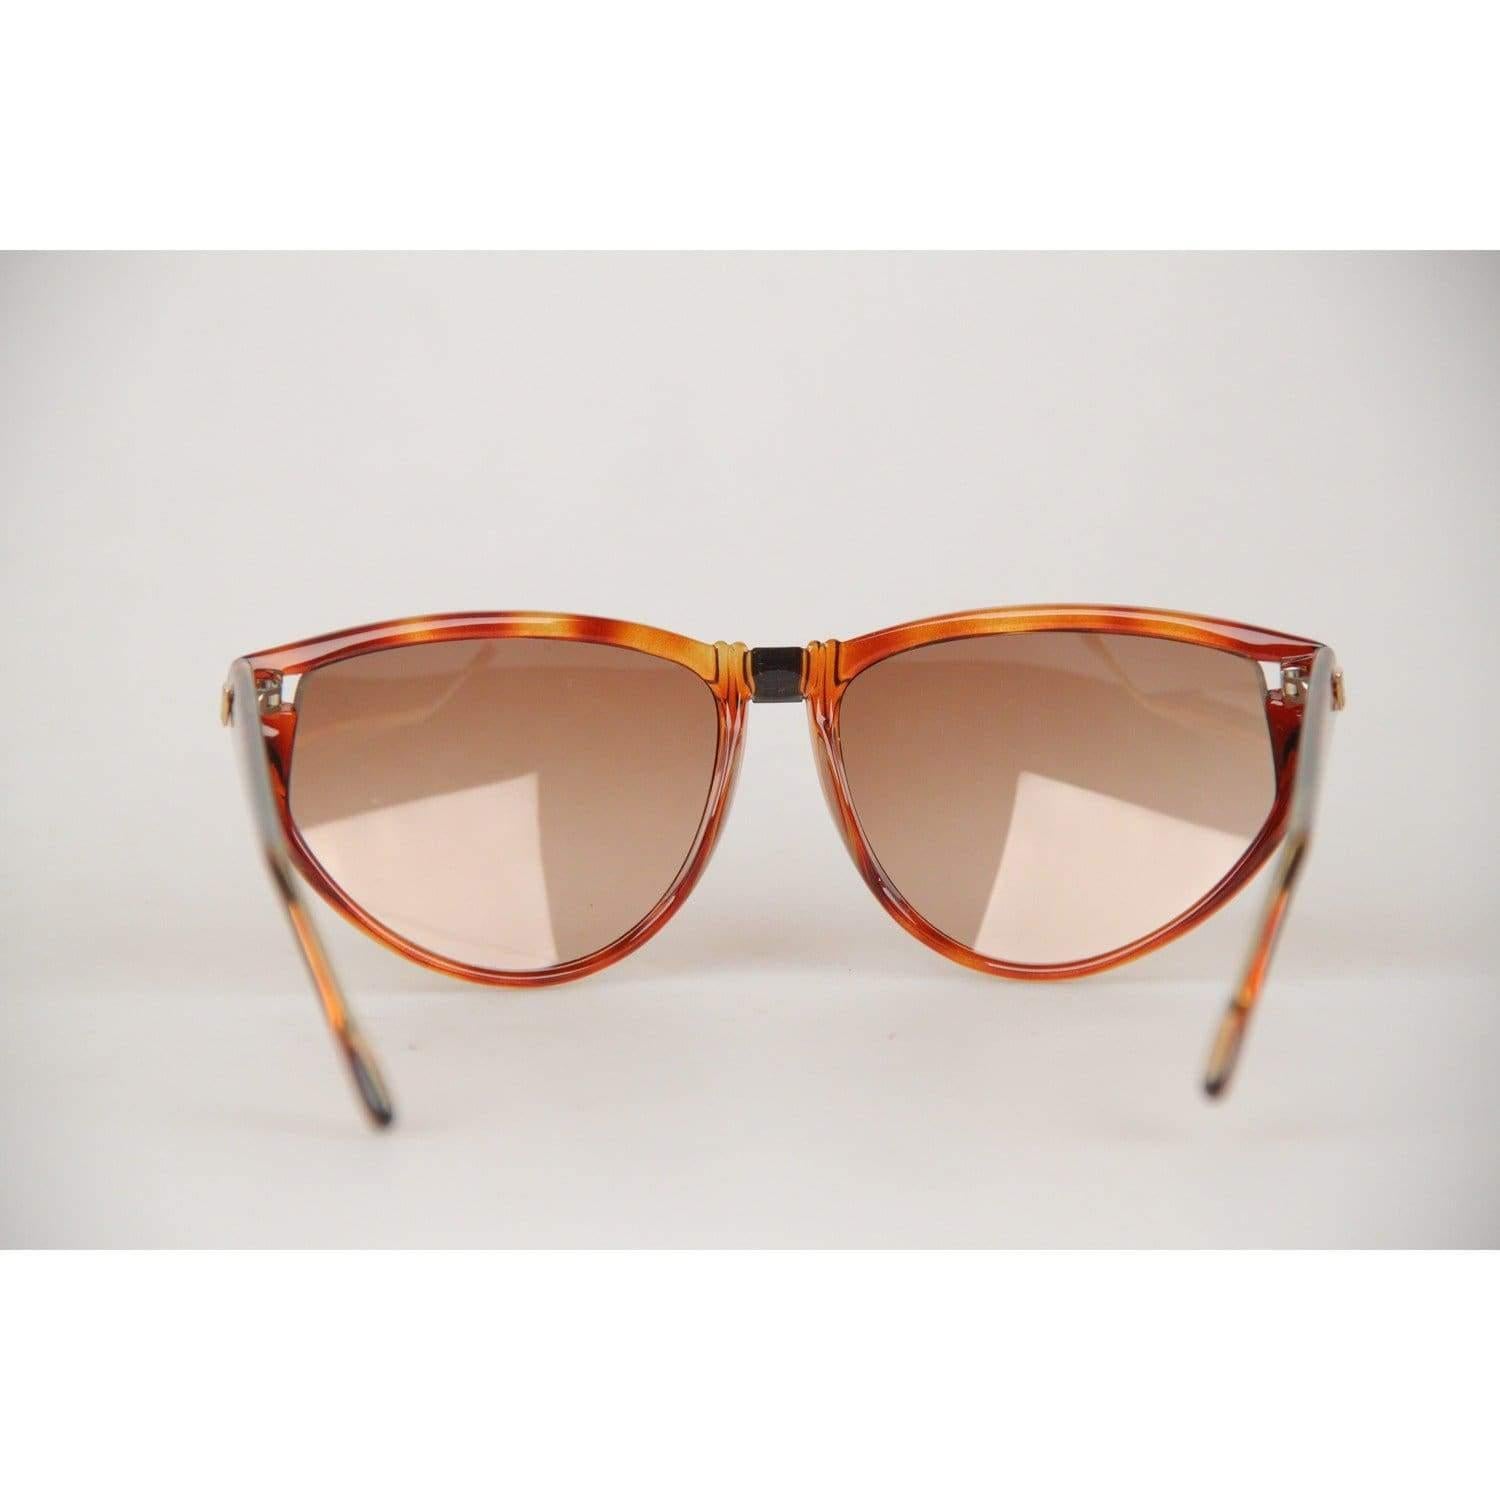 Givenchy Paris Vintage Brown Women Sunglasses mod SG01 COL 02 For Sale 3